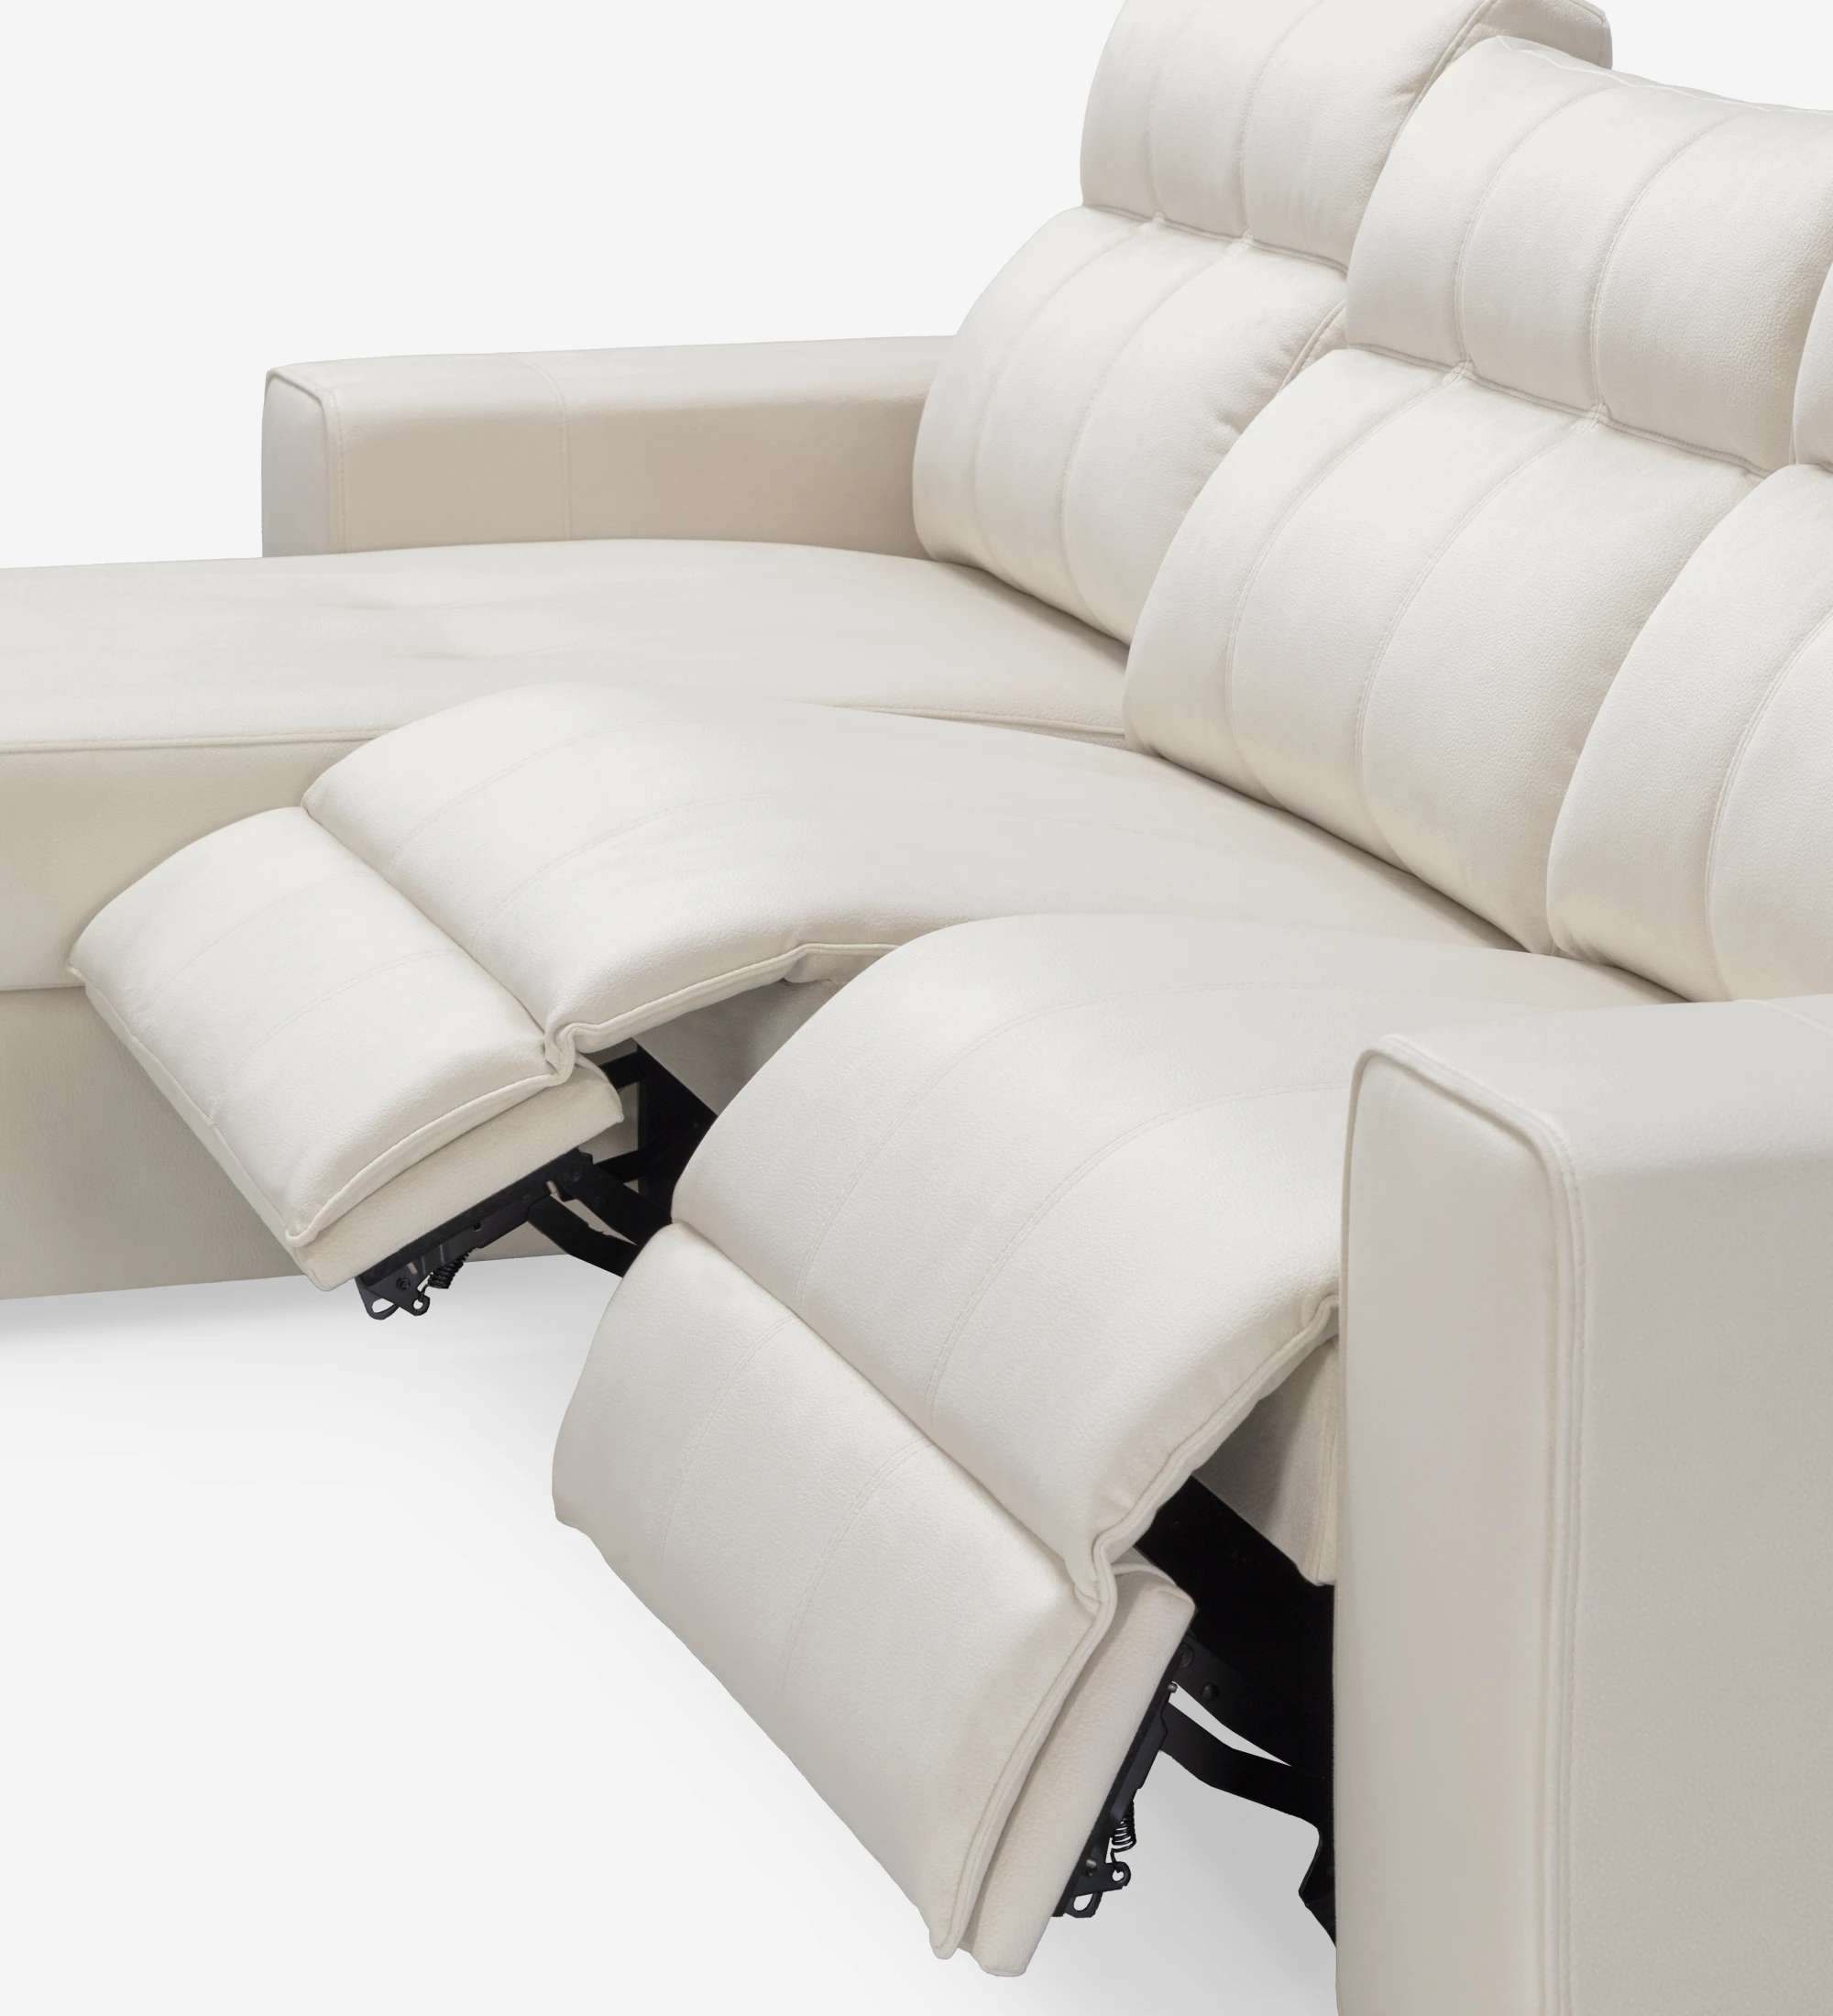 Nice sofá 2 plazas y chaise longue derecho, tapizado en tela beige, sistema relax y almacenaje en chaise longue, 287 cm.